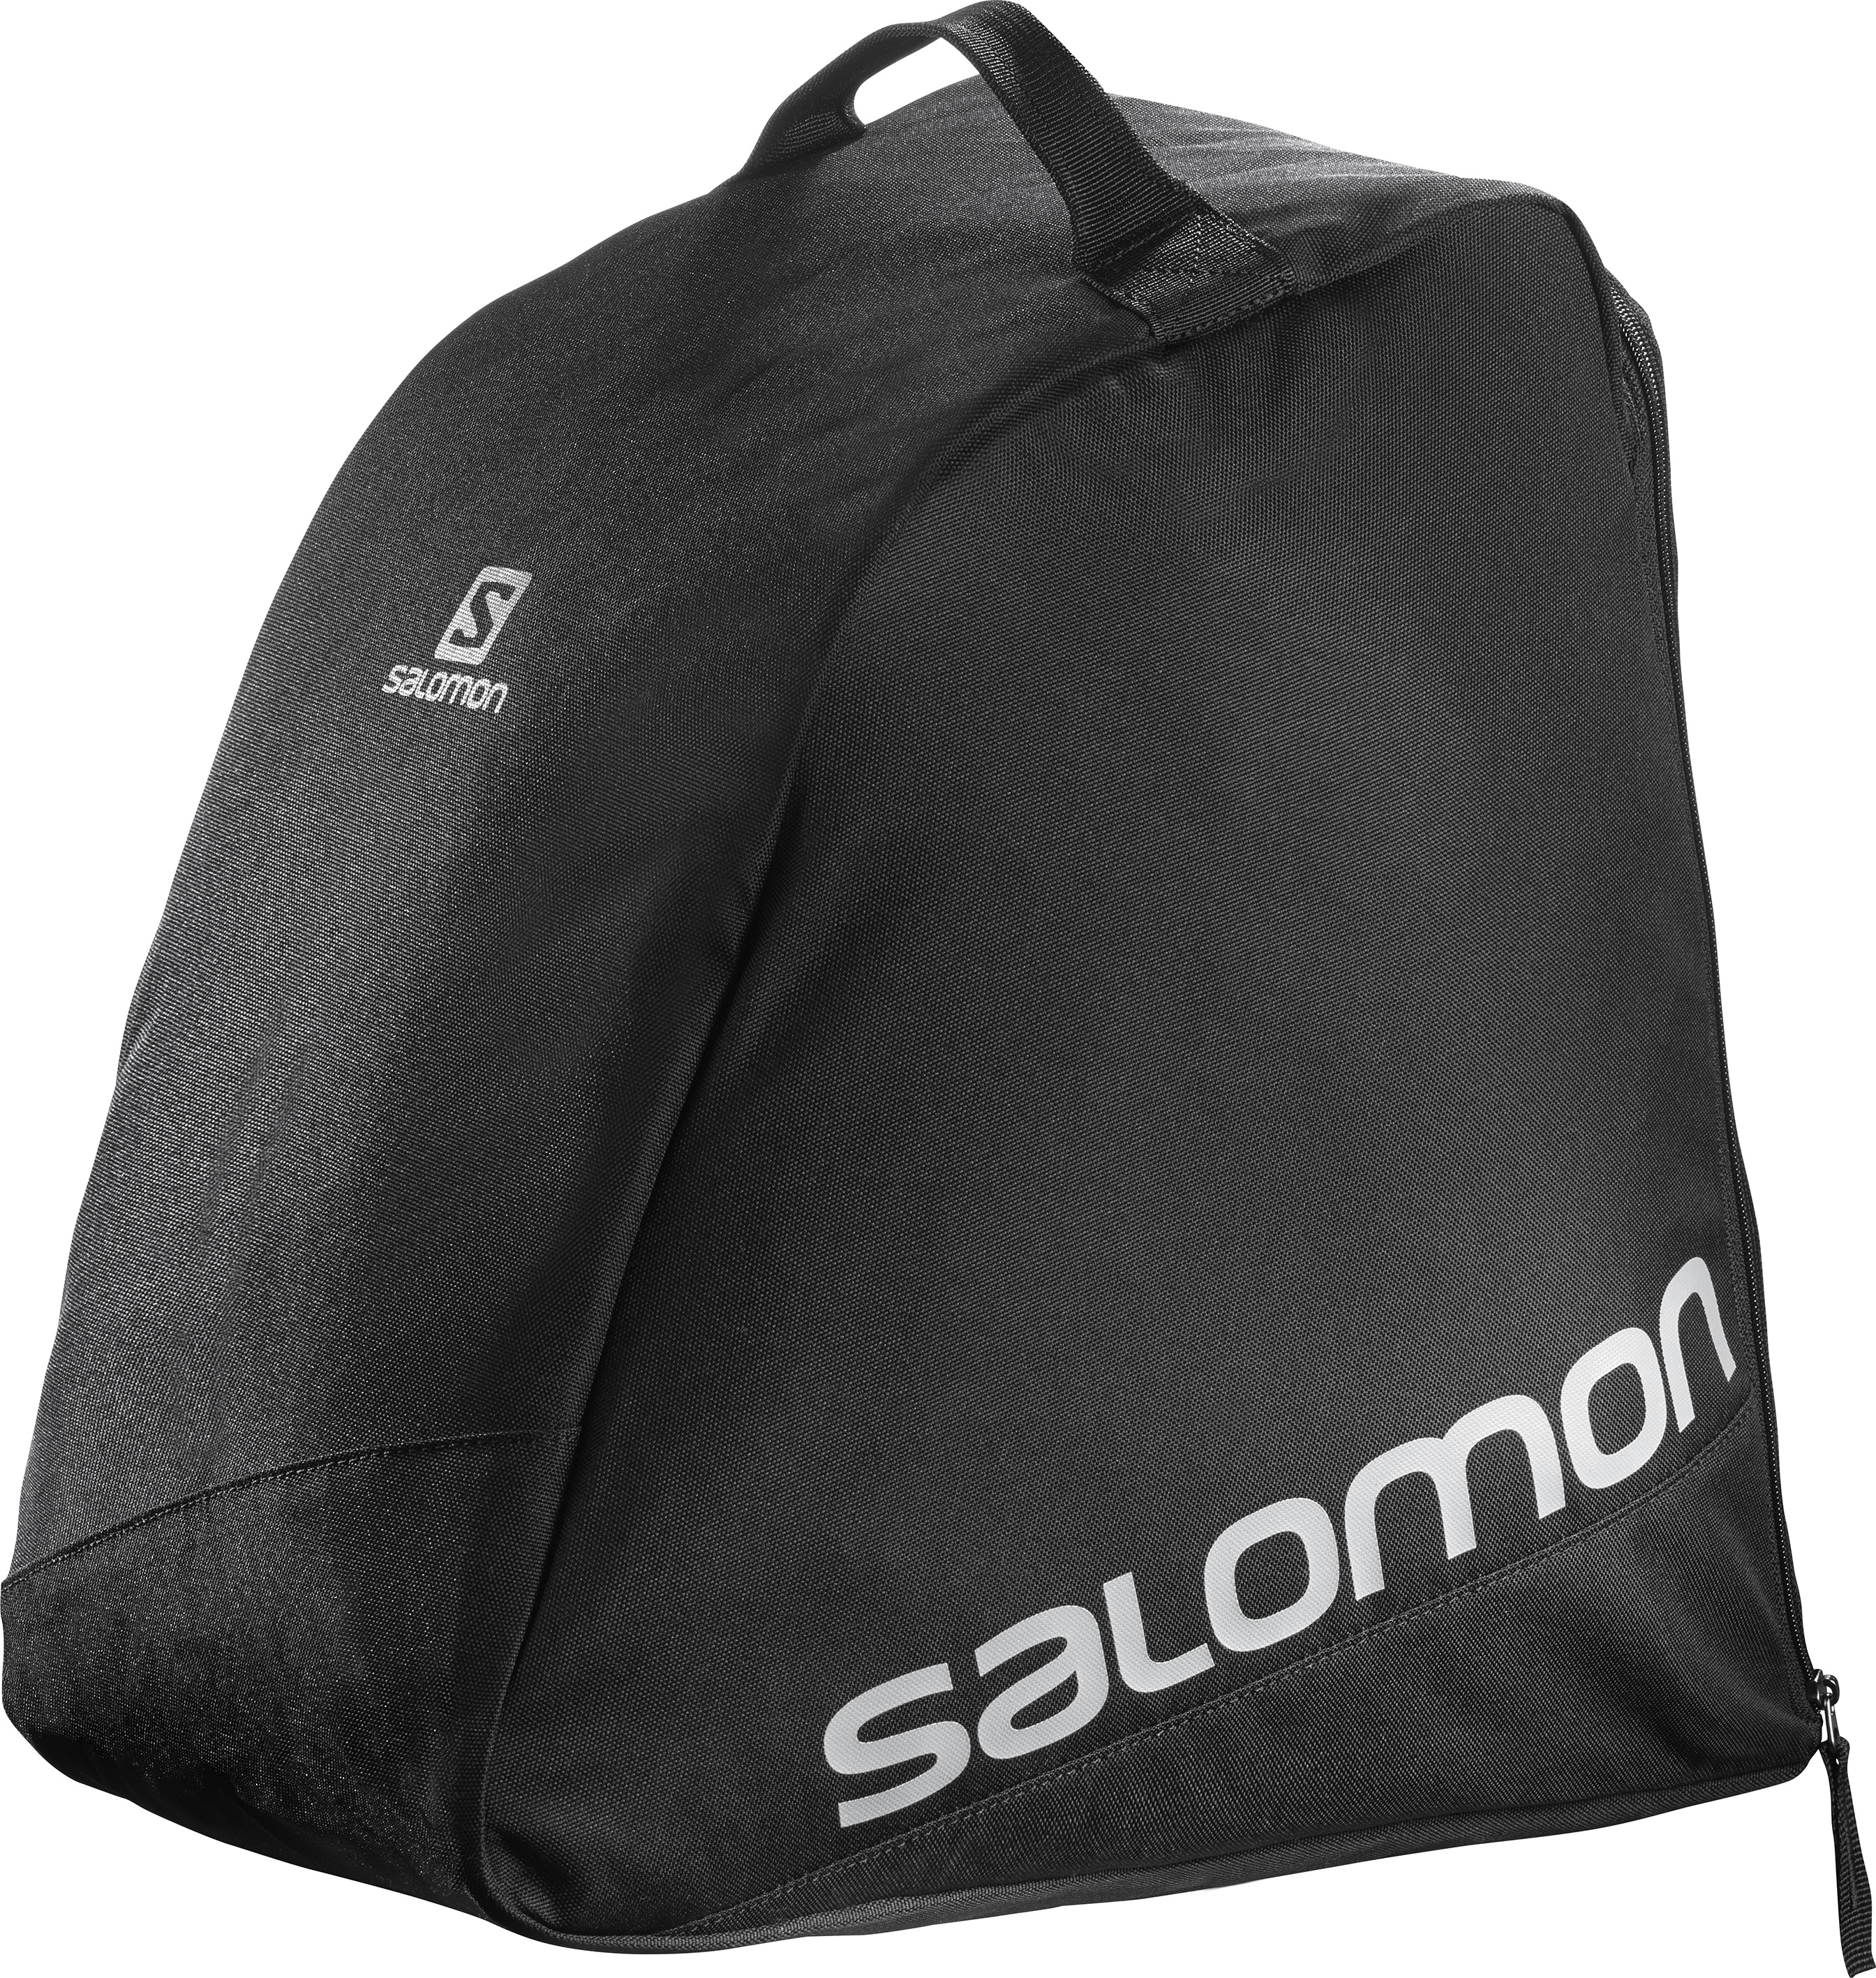 Salomon Skischuhtasche Original Boot Bag schwarz